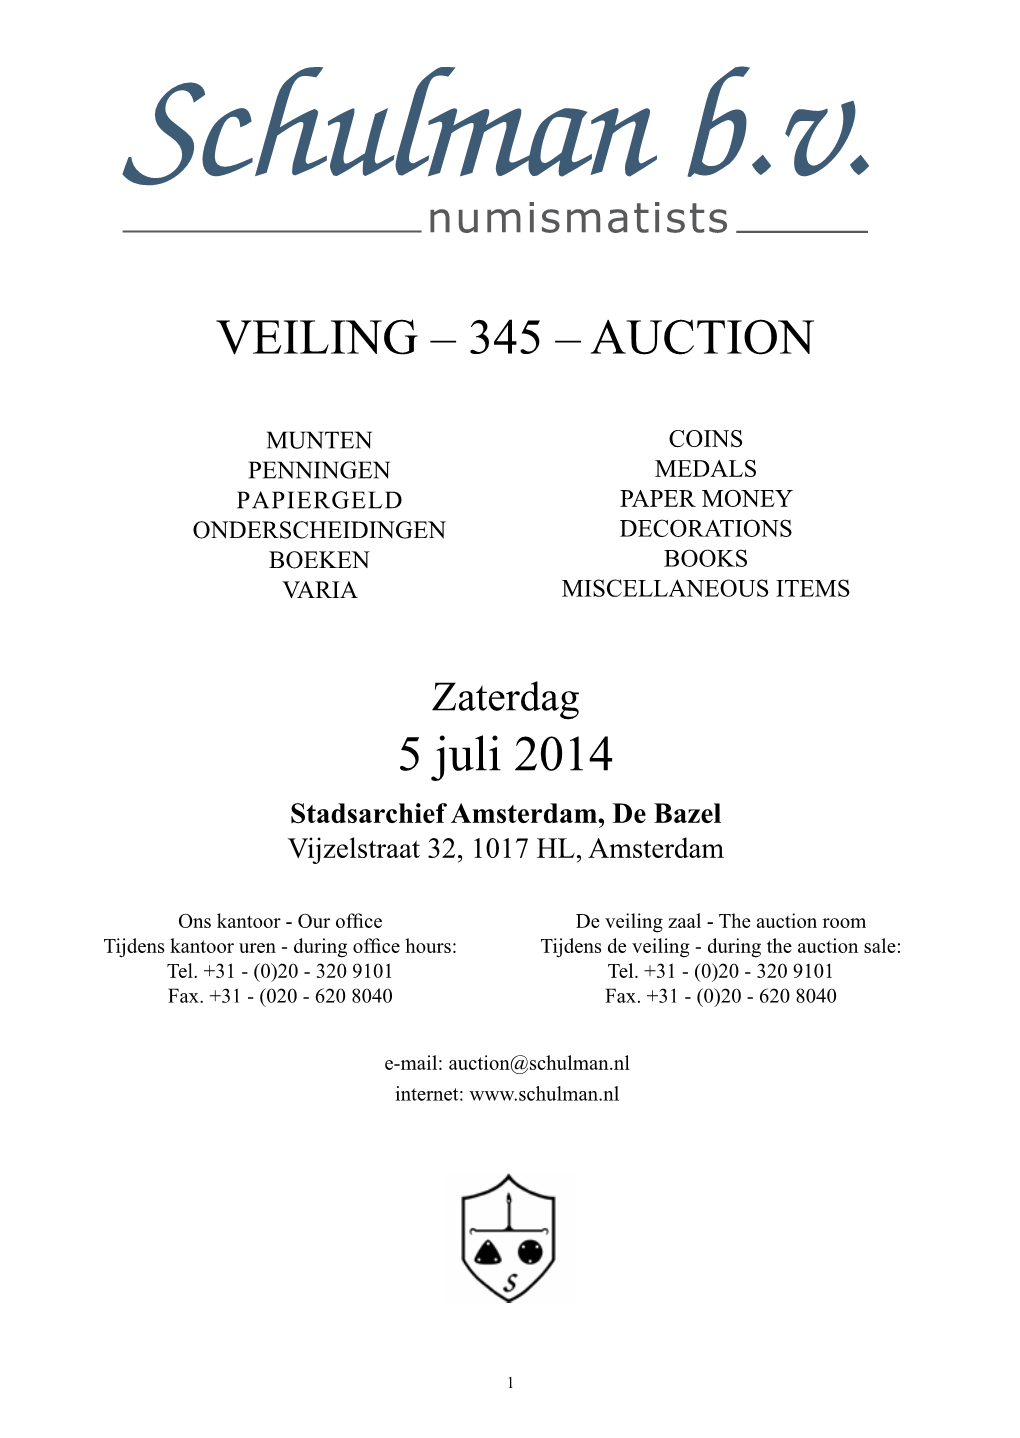 VEILING – 345 – AUCTION 5 Juli 2014